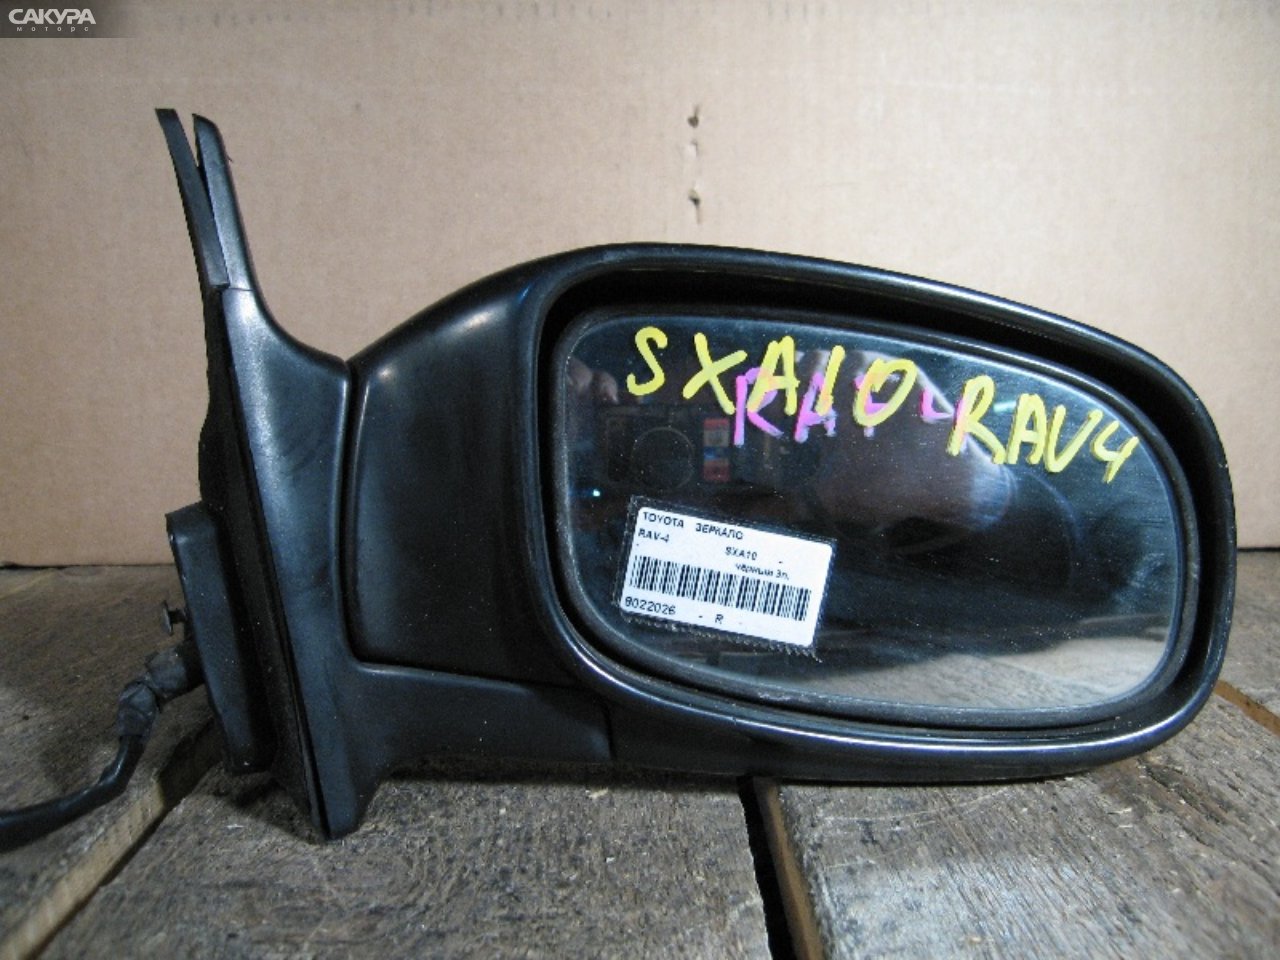 Зеркало боковое правое Toyota RAV4 SXA10C: купить в Сакура Абакан.